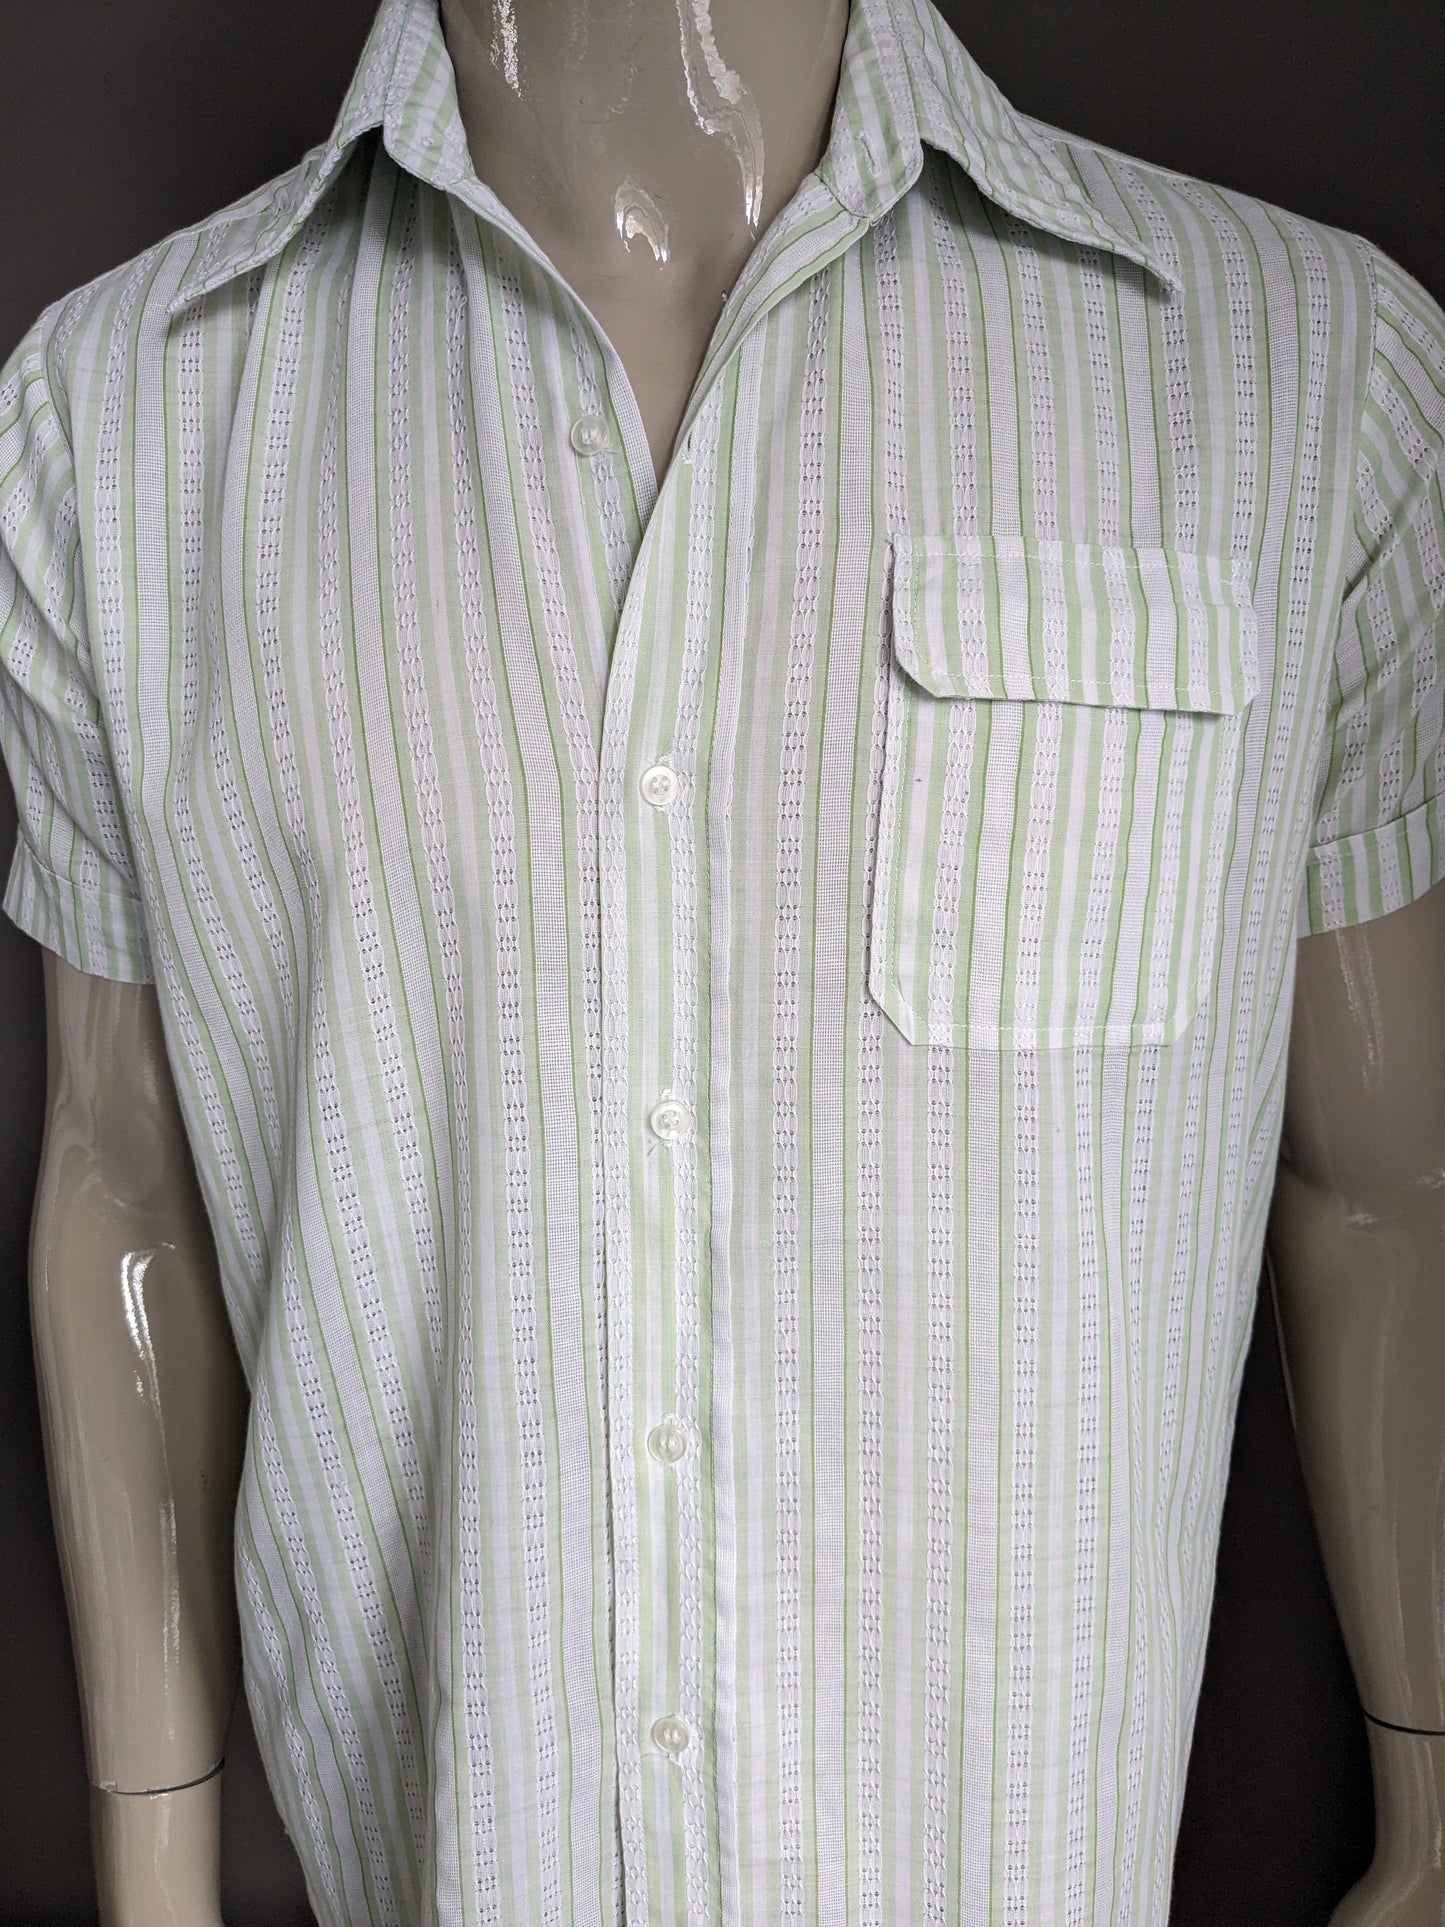 Shirt di amicizia vintage a manica corta con colletto appuntito. Motivo a strisce bianche verdi. Taglia L.